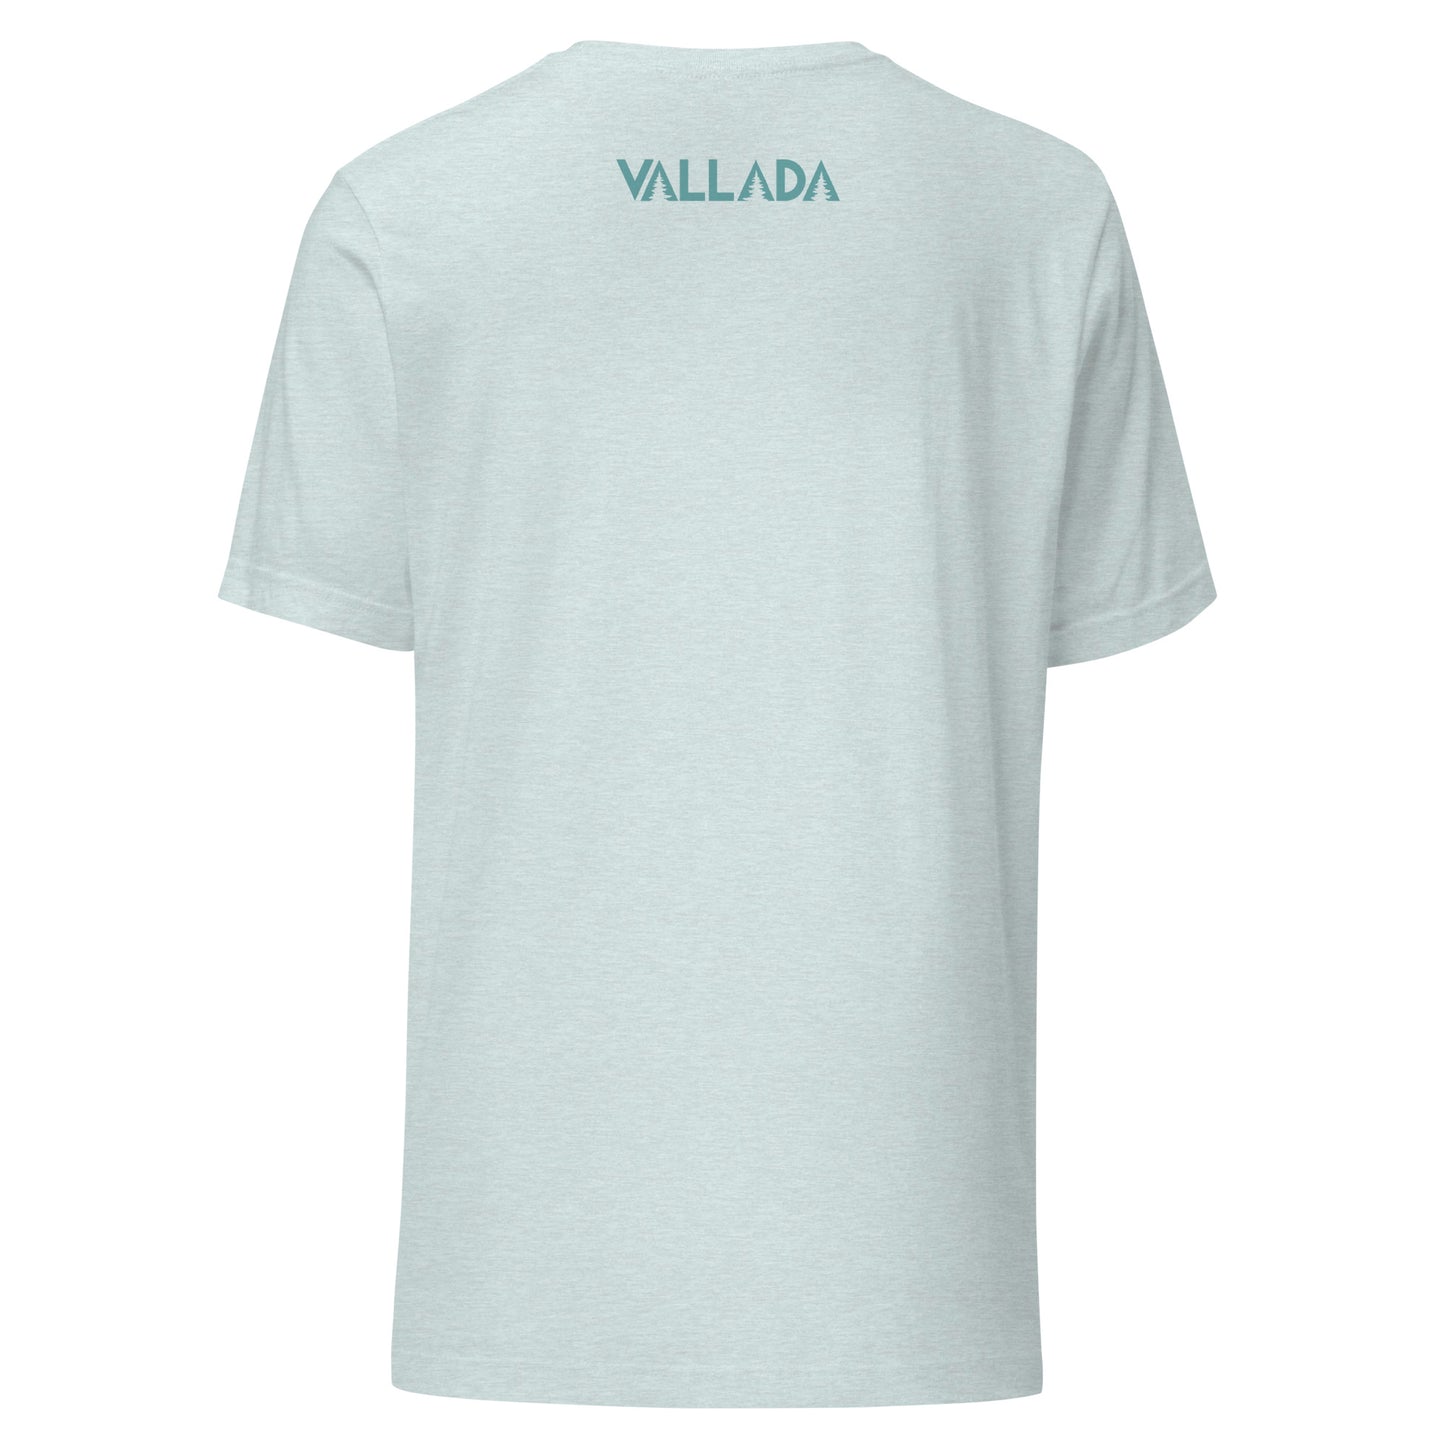 Rückseite eines hellblauen Damen T-Shirt mit Vallada-Logo.